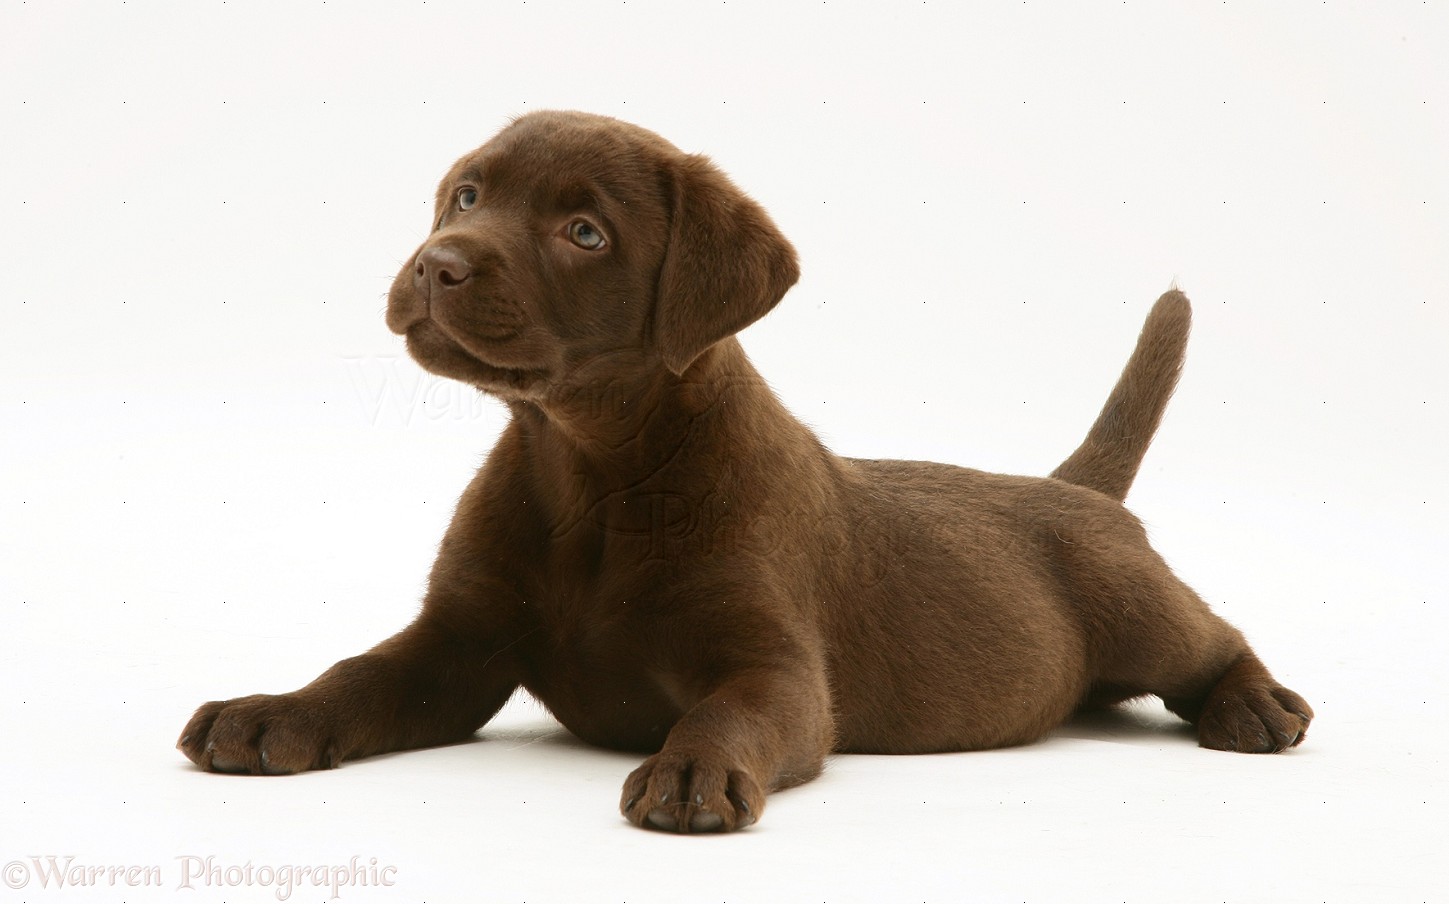 Dog: Chocolate Labrador Retriever pup photo.